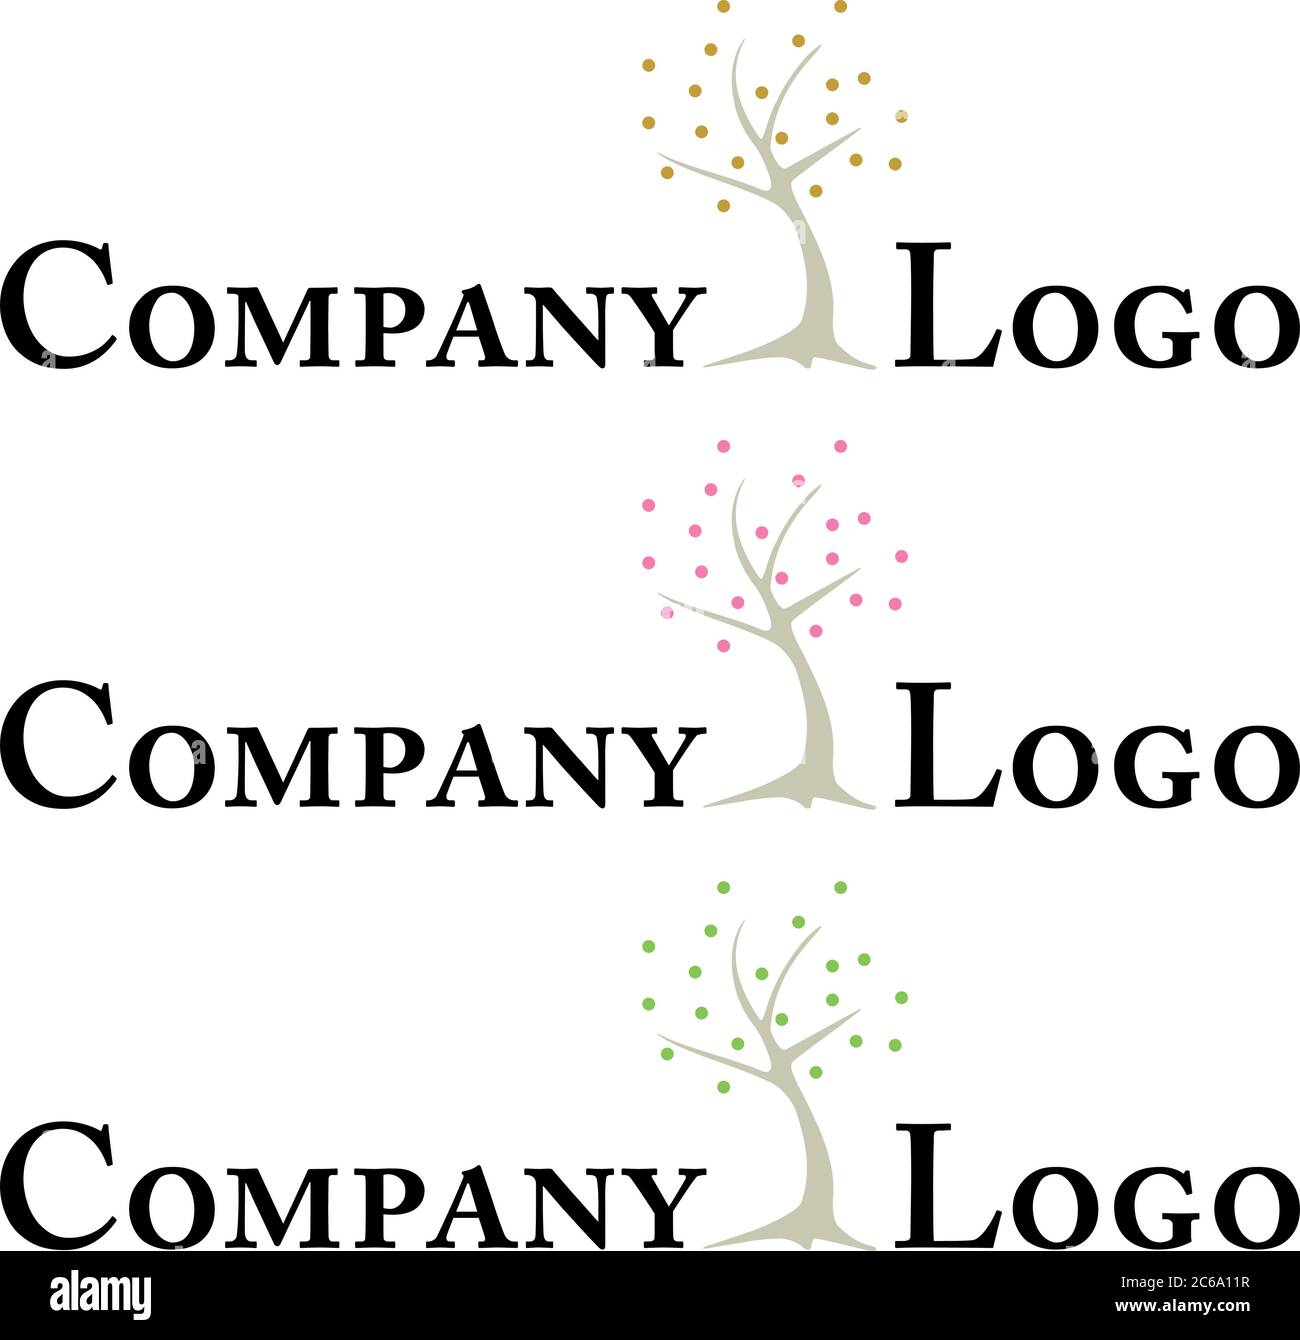 Modello logo aziendale con albero stilizzato minimalista, tre versioni a colori Illustrazione Vettoriale